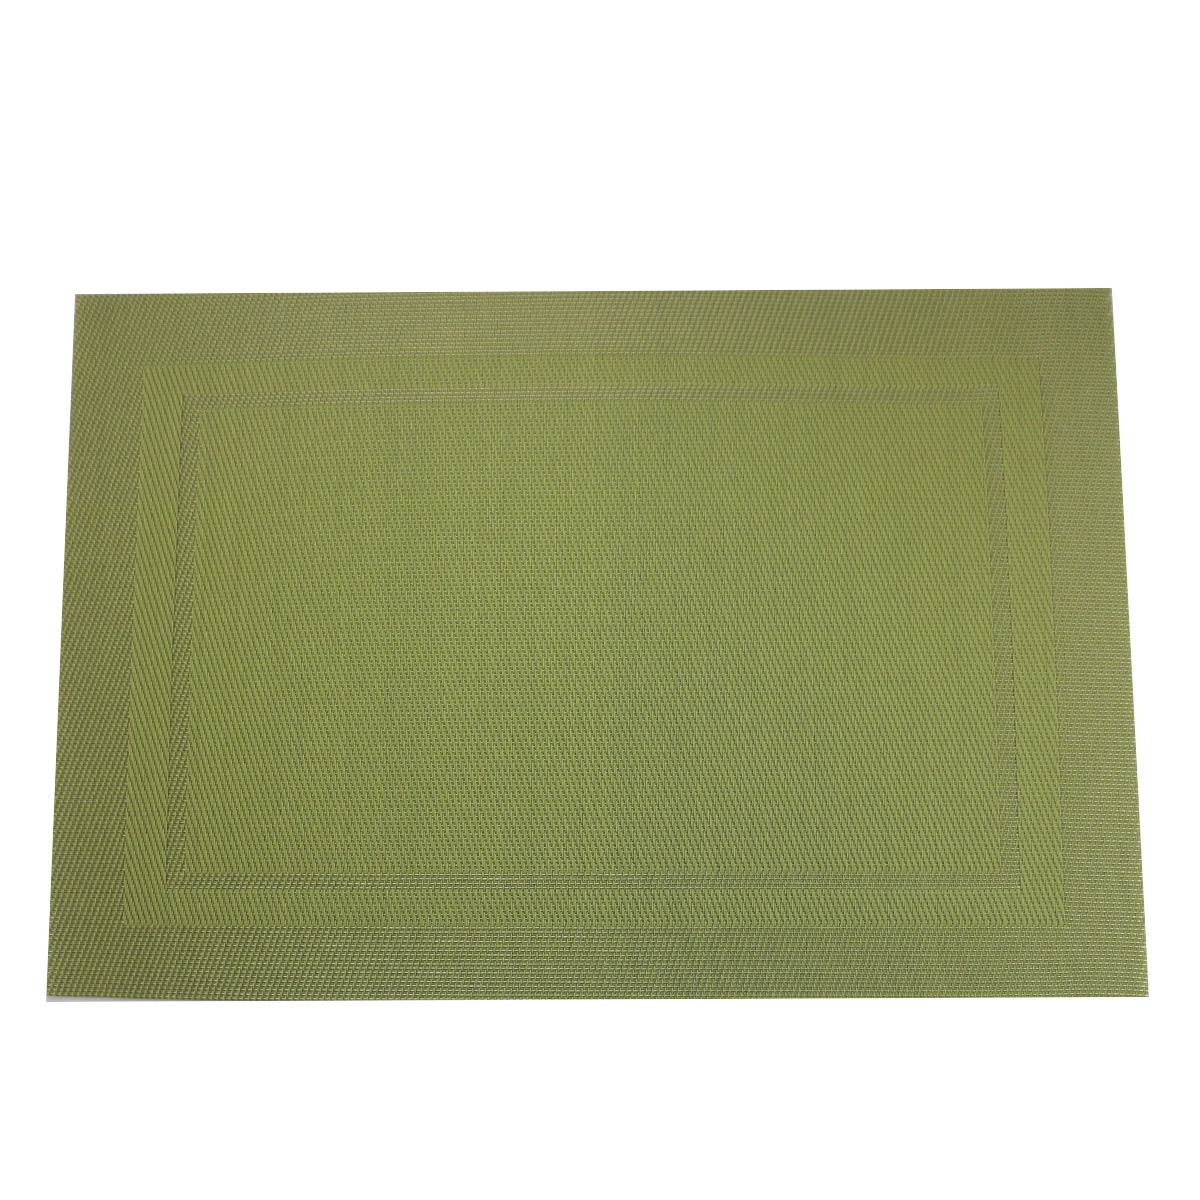 JANKNG 6 шт. термостойкий и водонепроницаемый ПВХ коврик для столовых приборов Красочные нескользящие коврики для обеденного стола кухонные принадлежности - Цвет: Checkered green